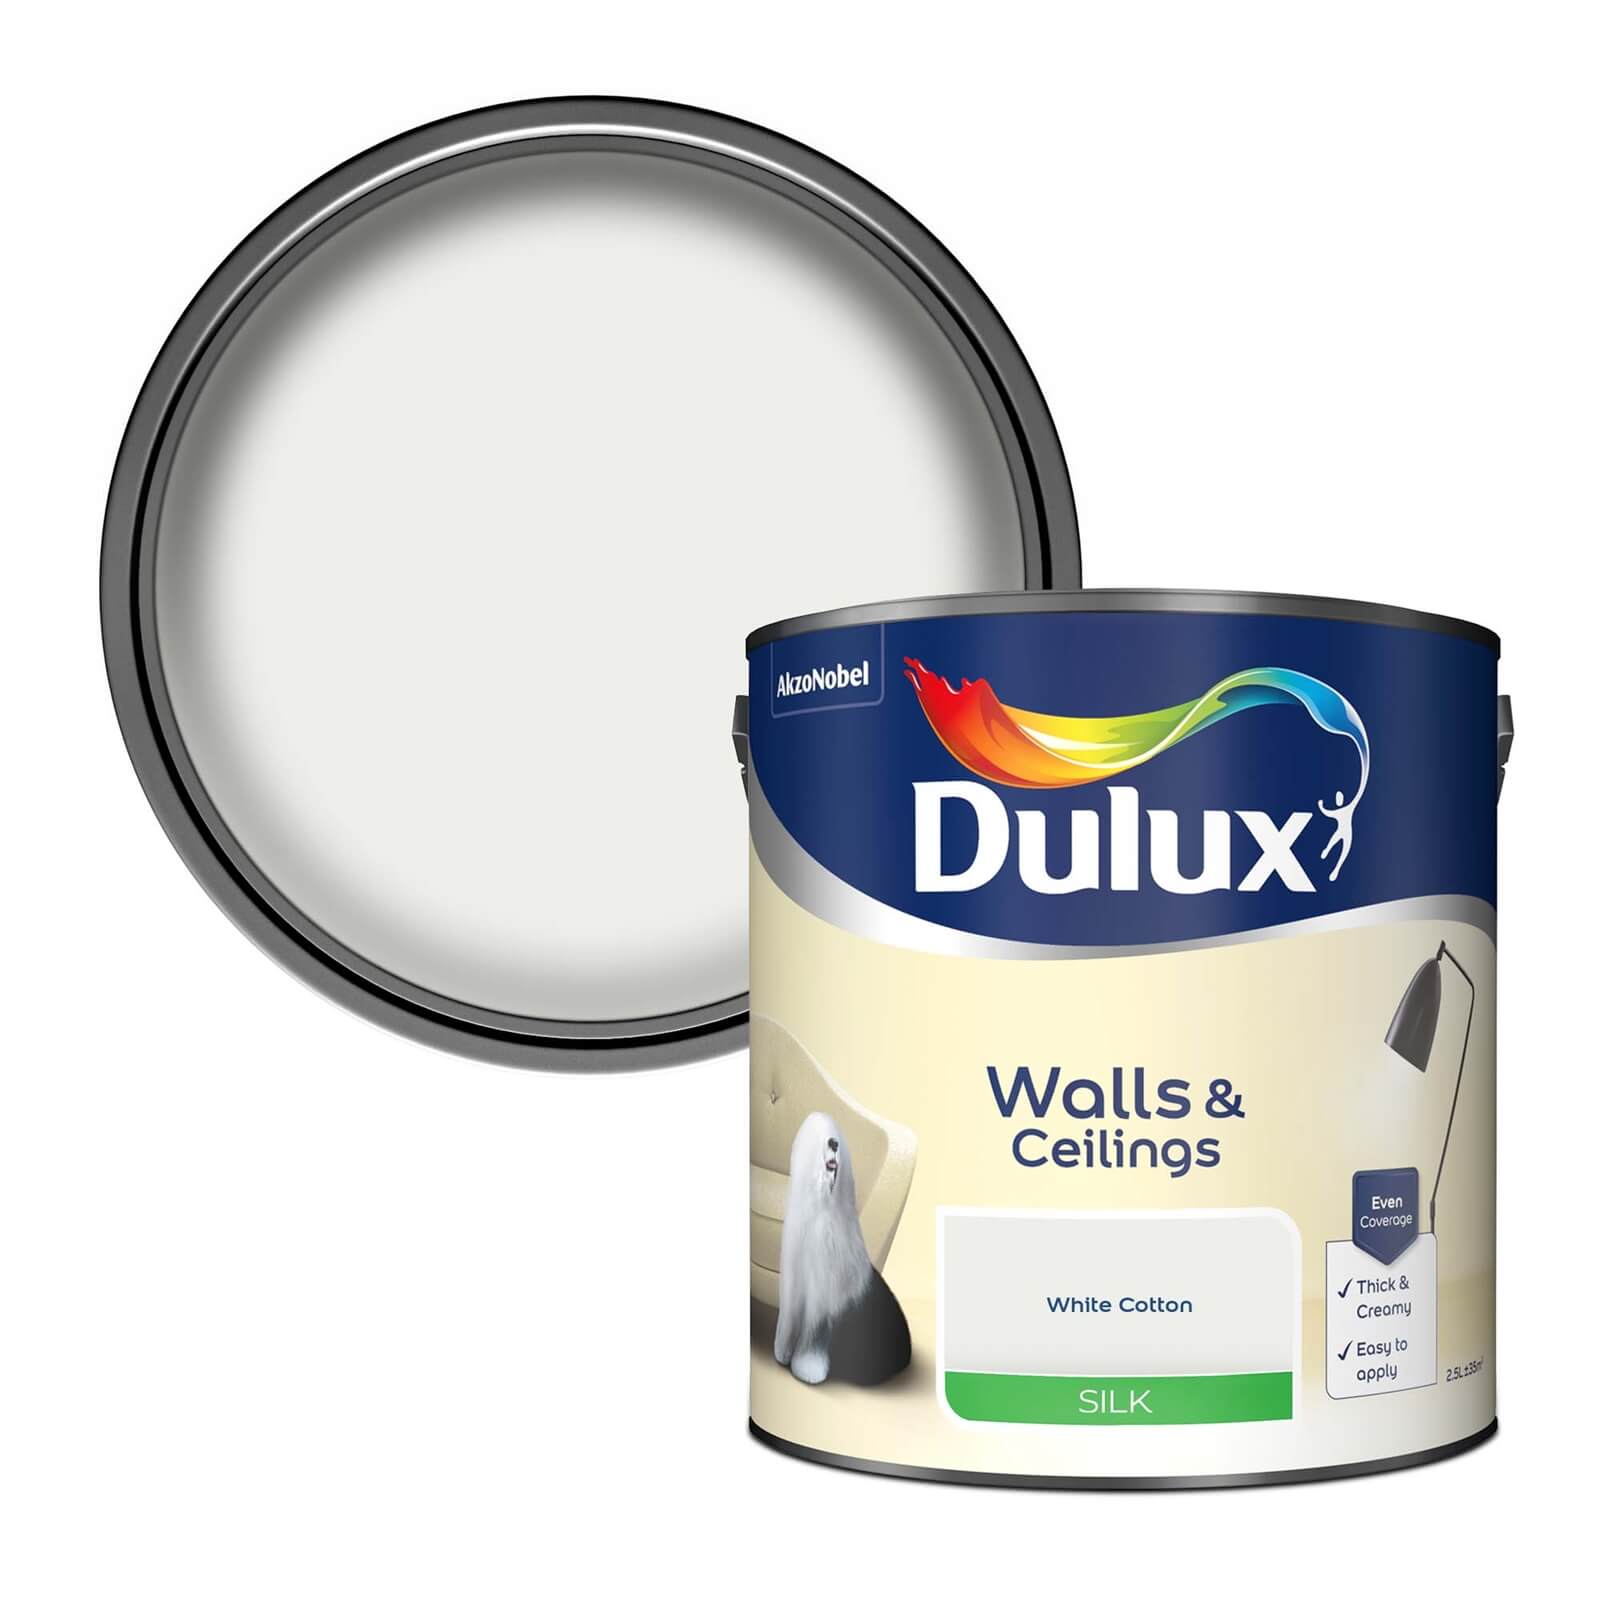 Dulux Silk Emulsion Paint White Cotton - 2.5L